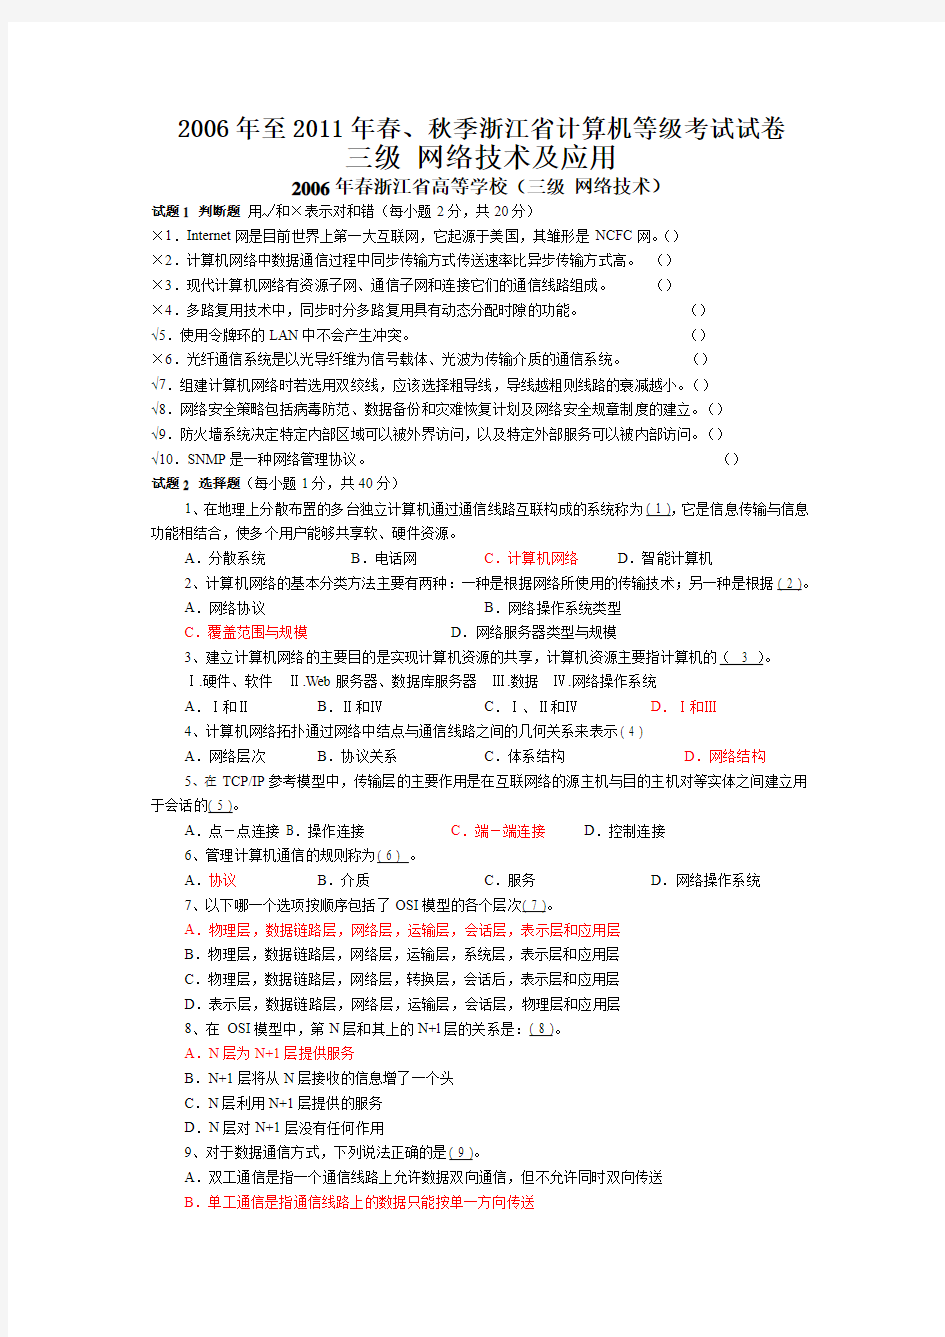 2006年至2011年春、秋季浙江省三级计算机网络考试试卷及答案全部